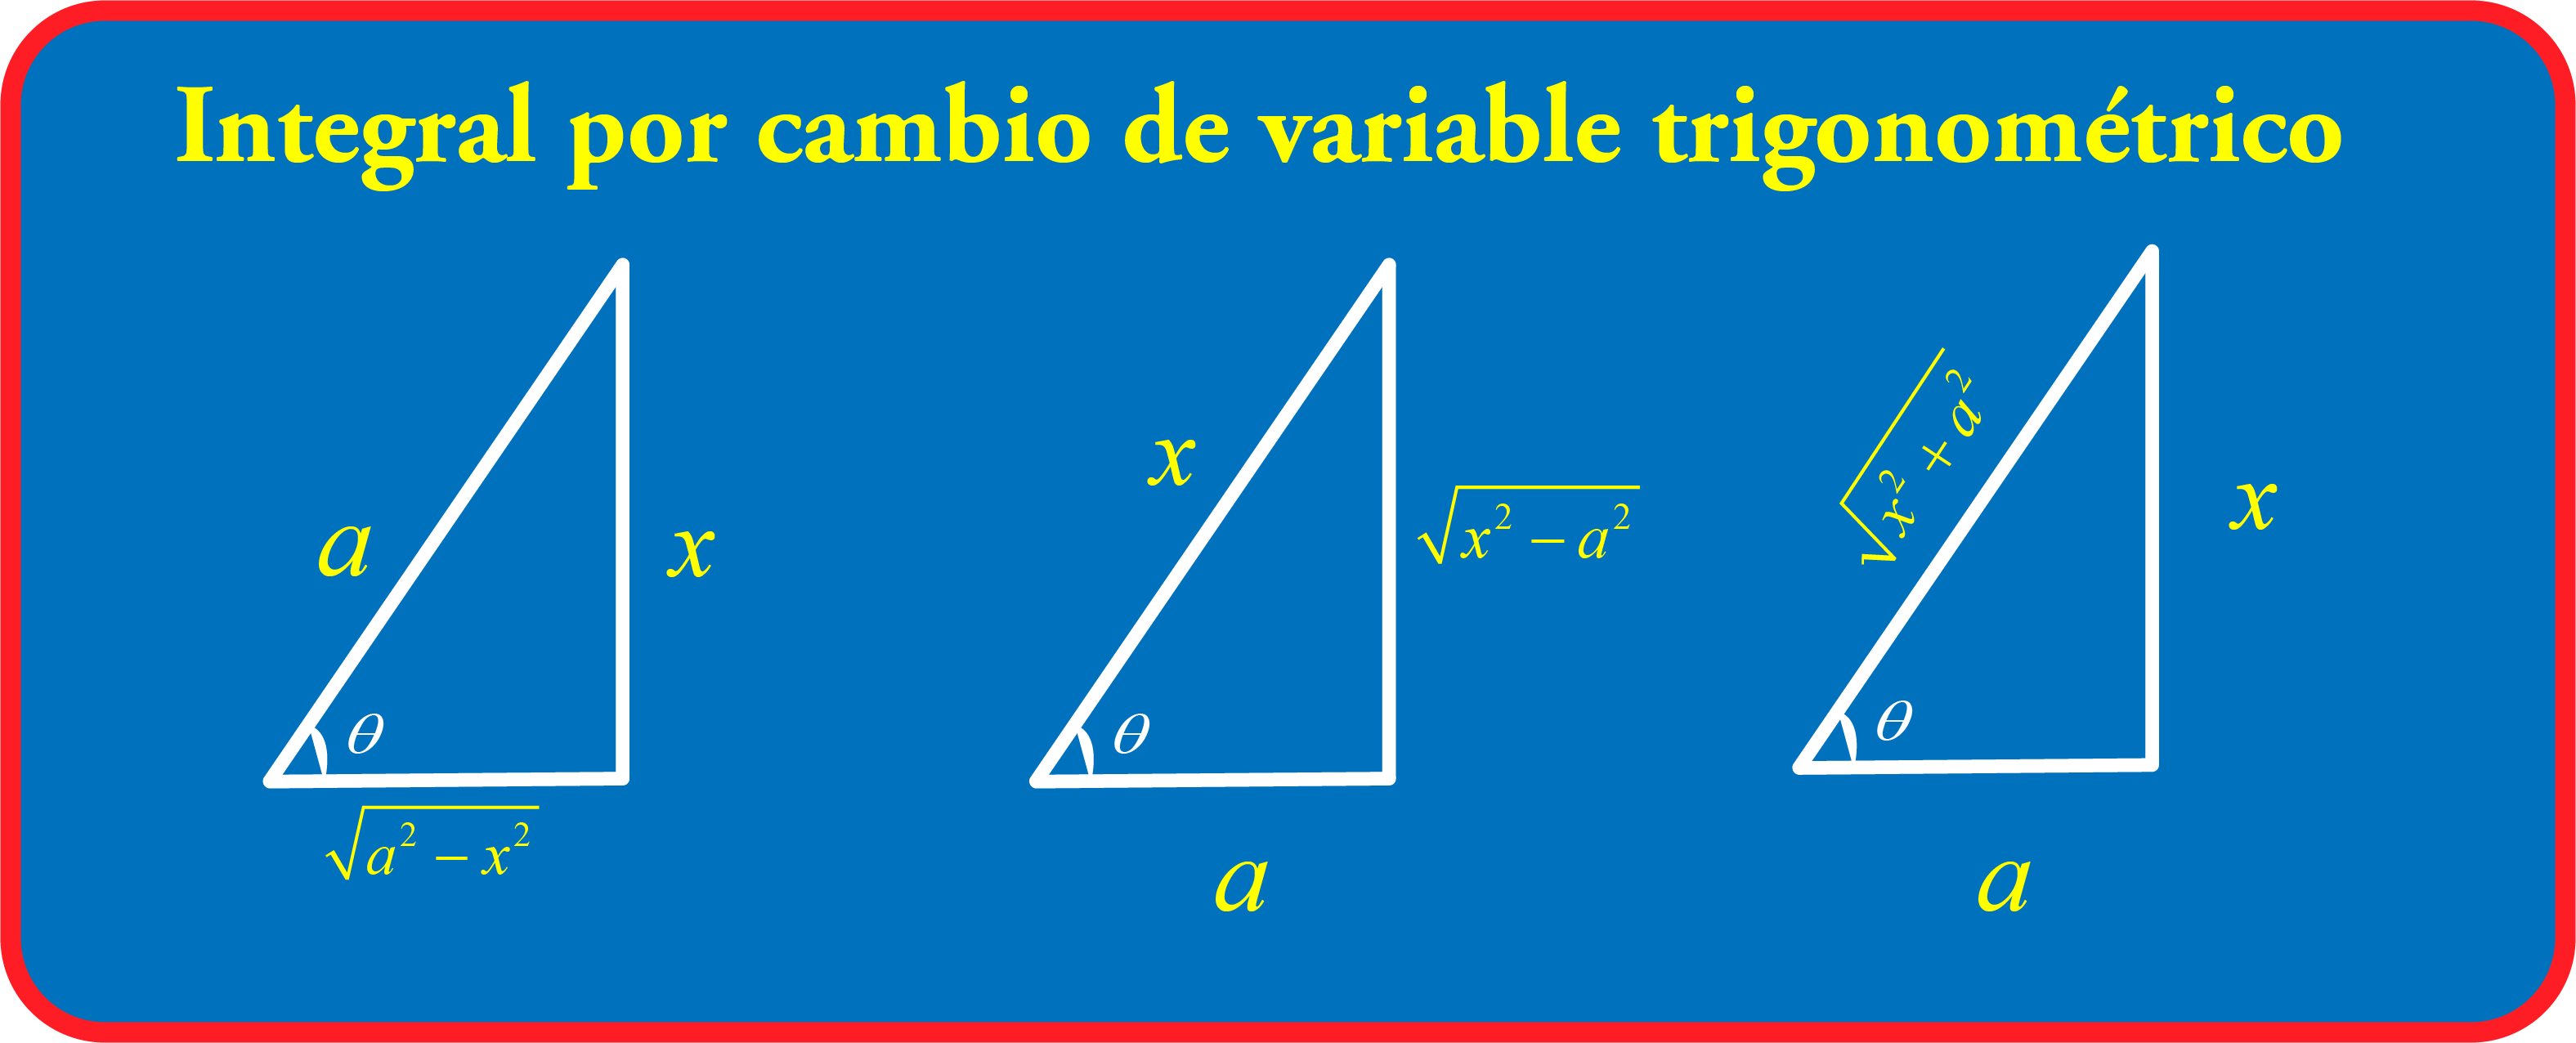 En este momento estás viendo Integral por cambio de variable trigonométrico